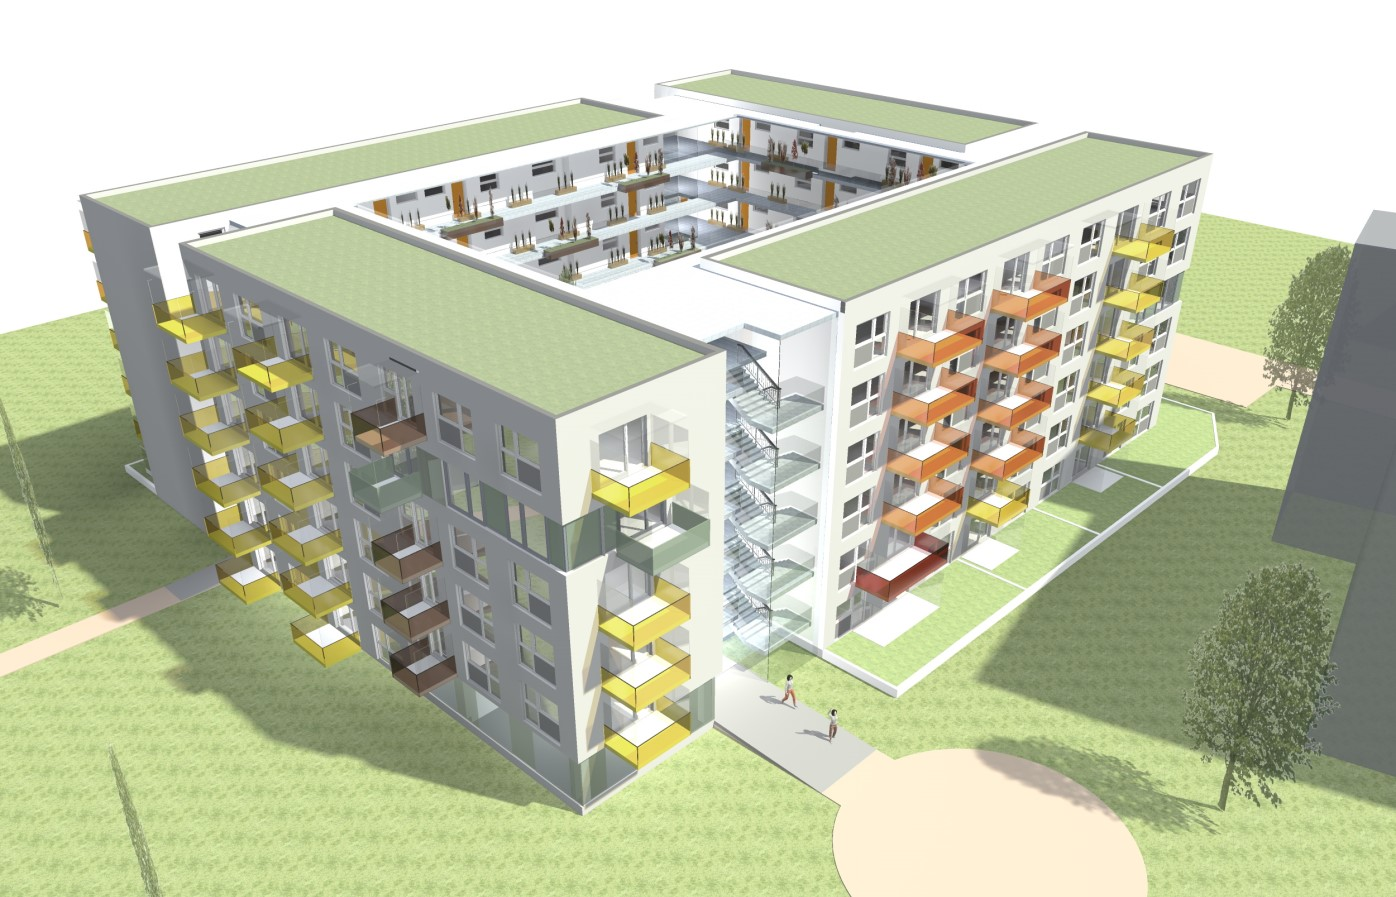 Bauherr: ImmoCommerz Delta GmbH Architekt: Zellinger, Gunhold & Partner Zeitraum: 2014/2015 Gewerke: HKLSE Bauvolumen: 1,30 Mio. HKLS 0,95 Mio.